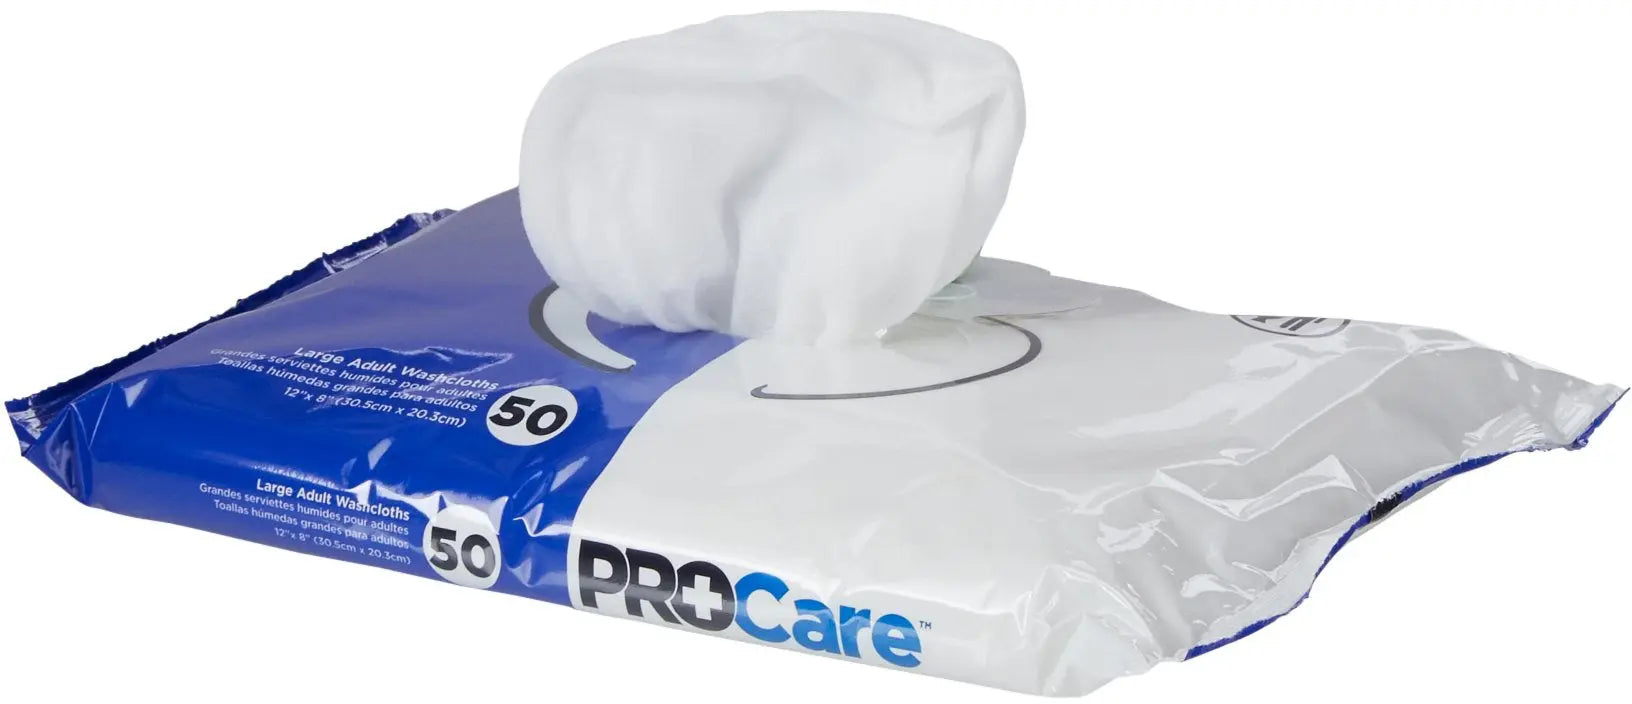 Personal Wipe ProCare™ Soft Pack Aloe / Vitamin E Scented